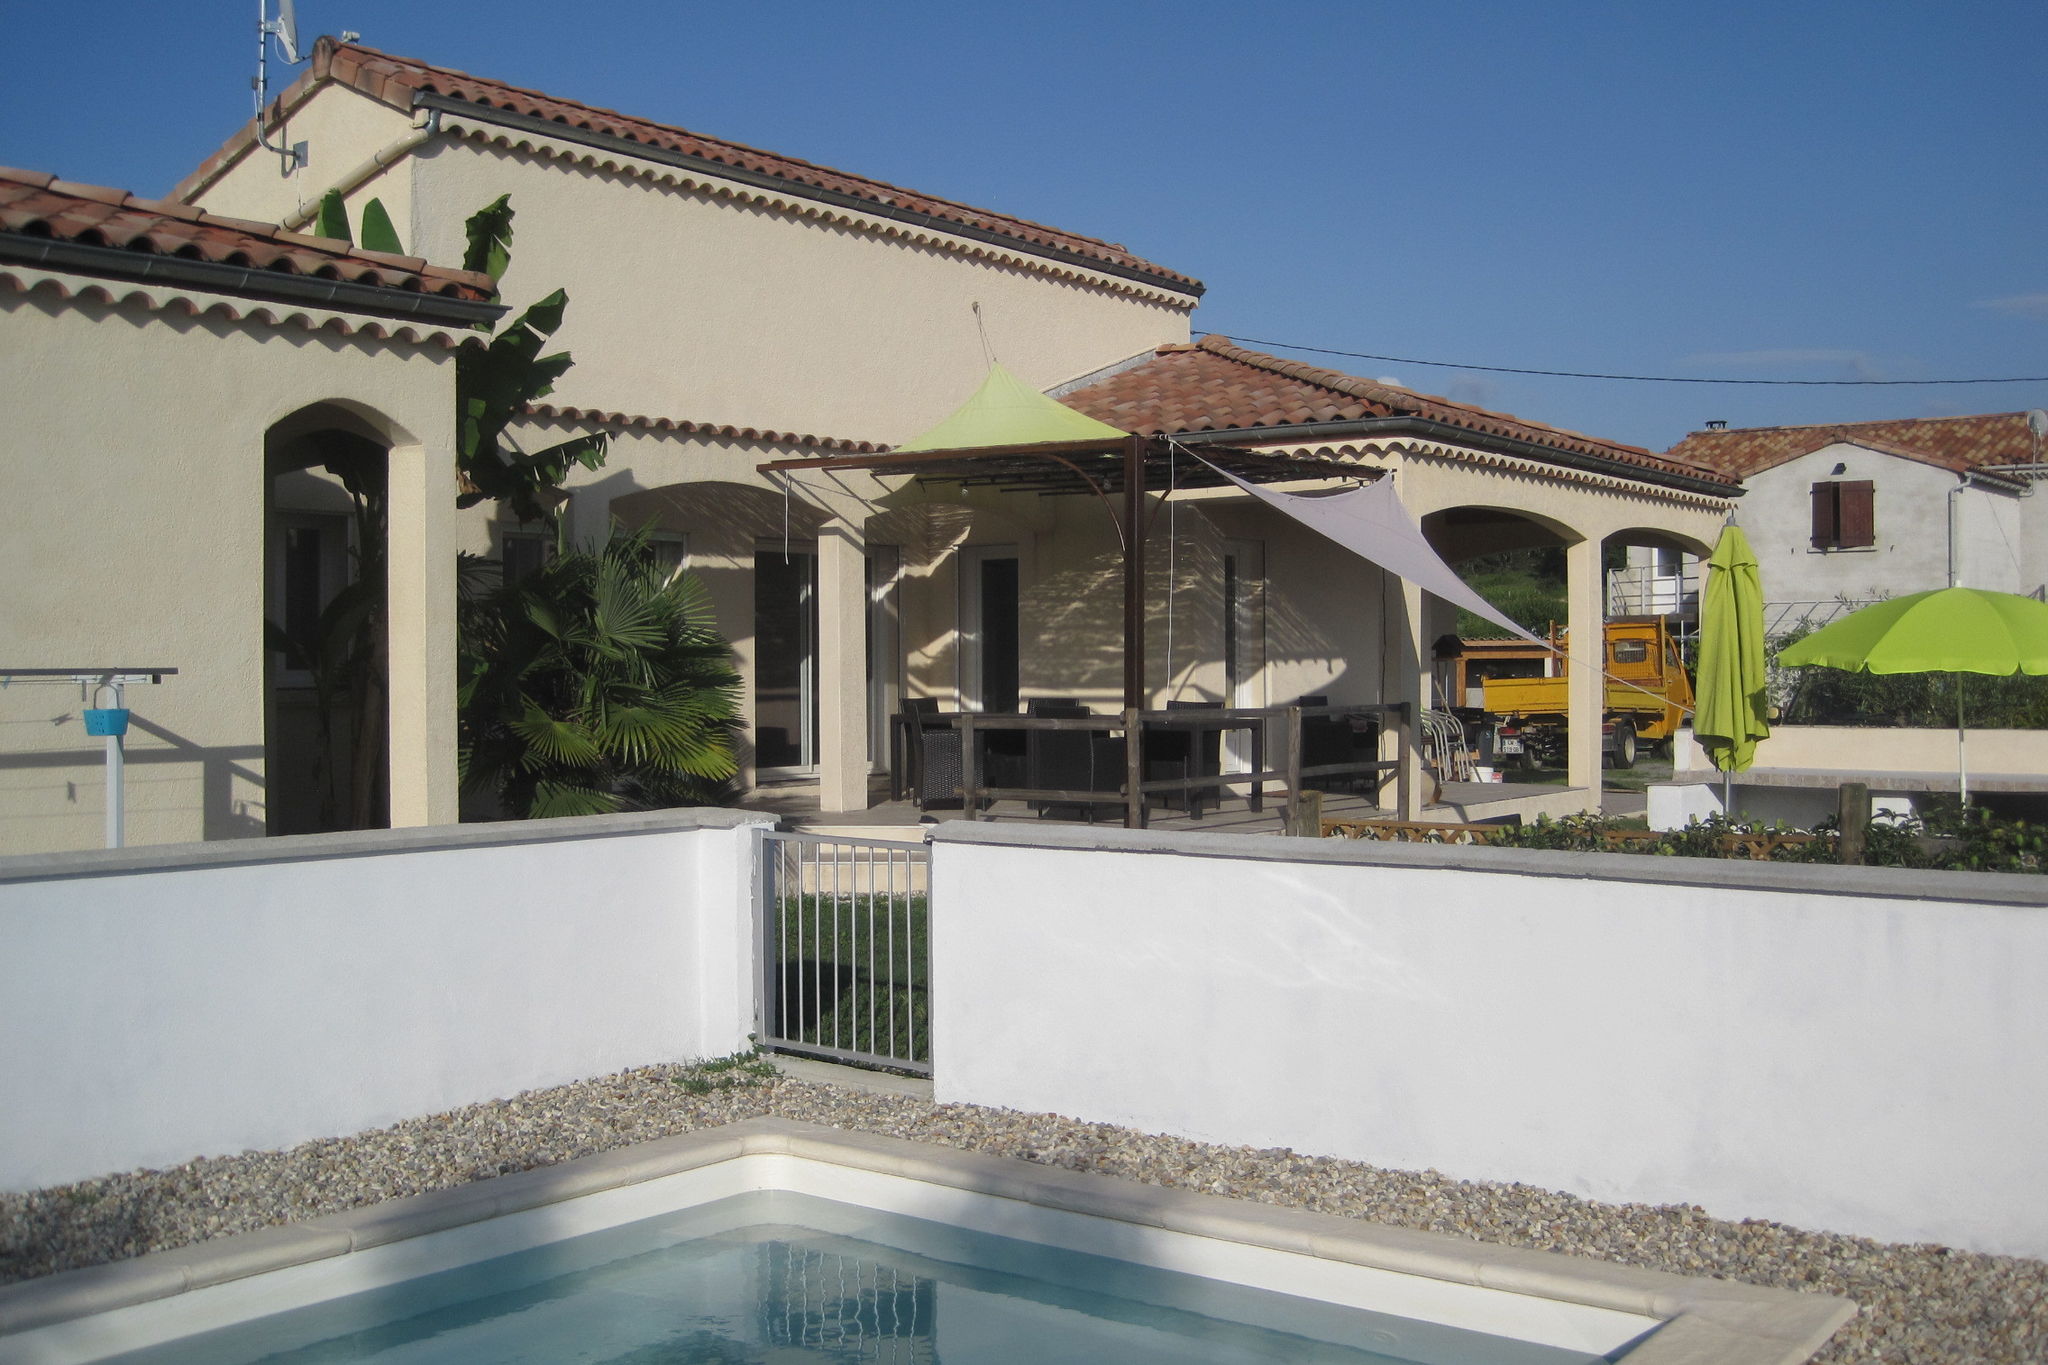 Maison de vacances moderne avec piscine chauffée à Pradons